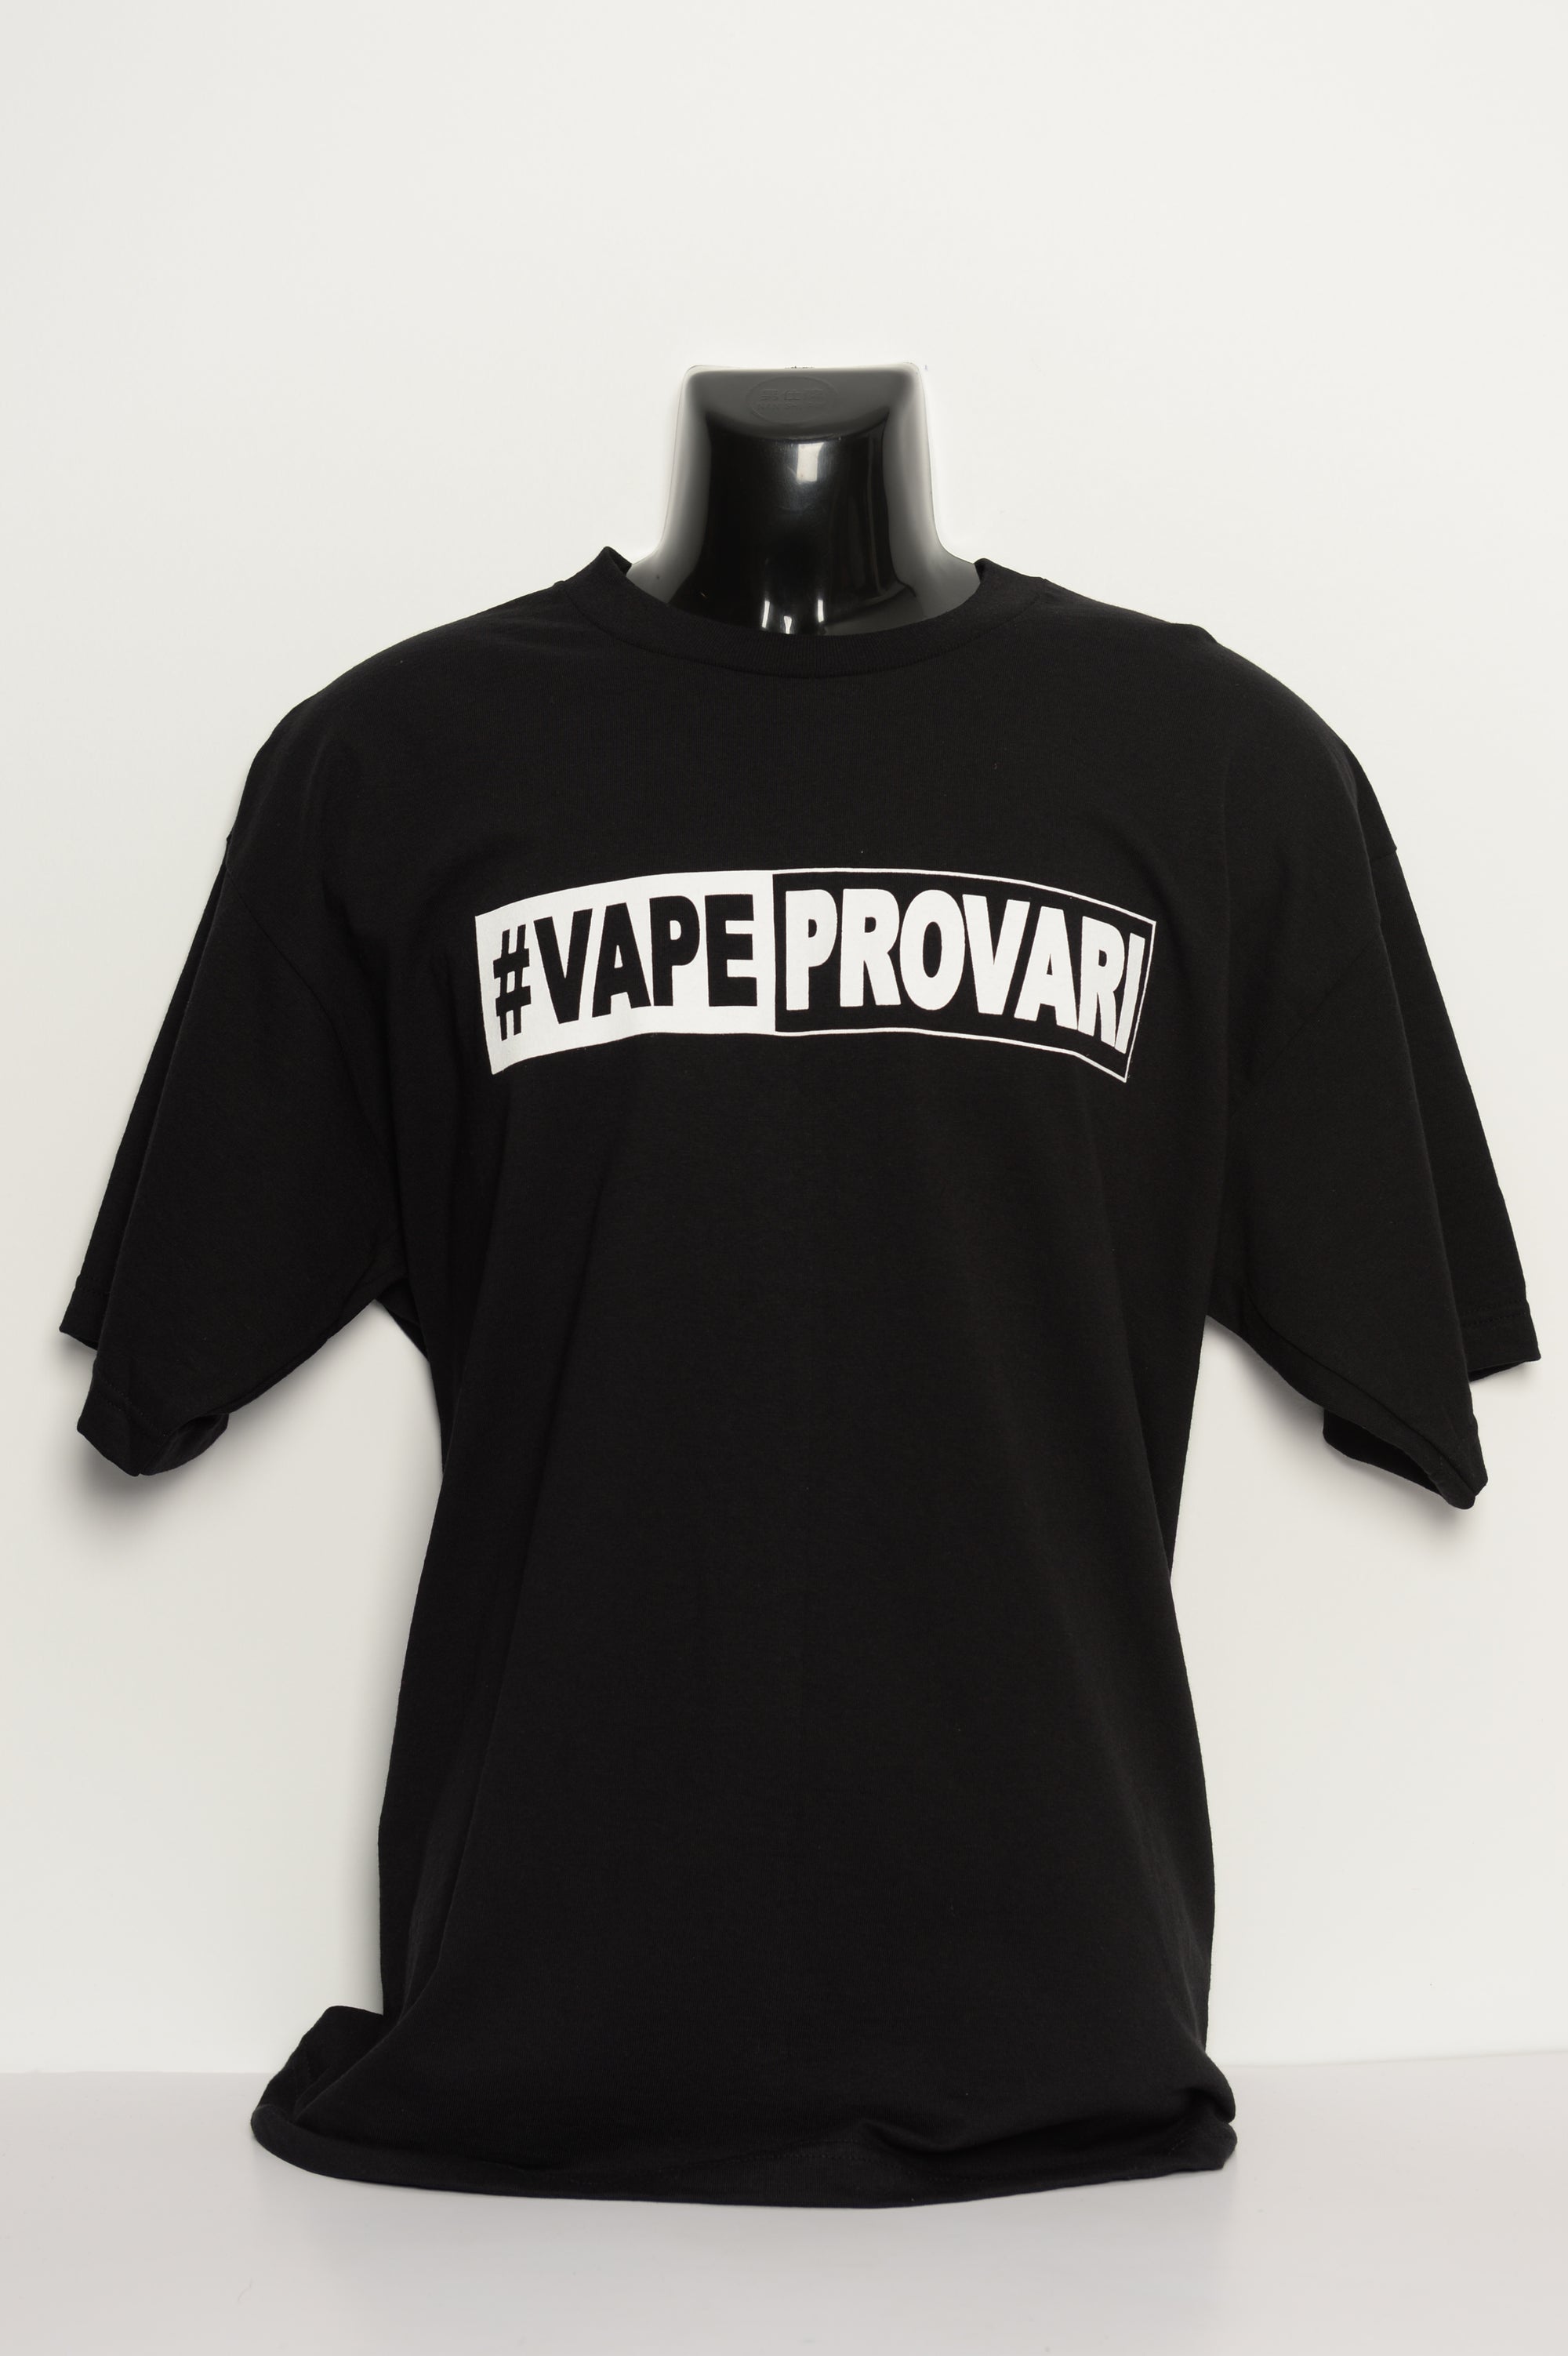  T-shirt • VAPEPROVARI • Black 